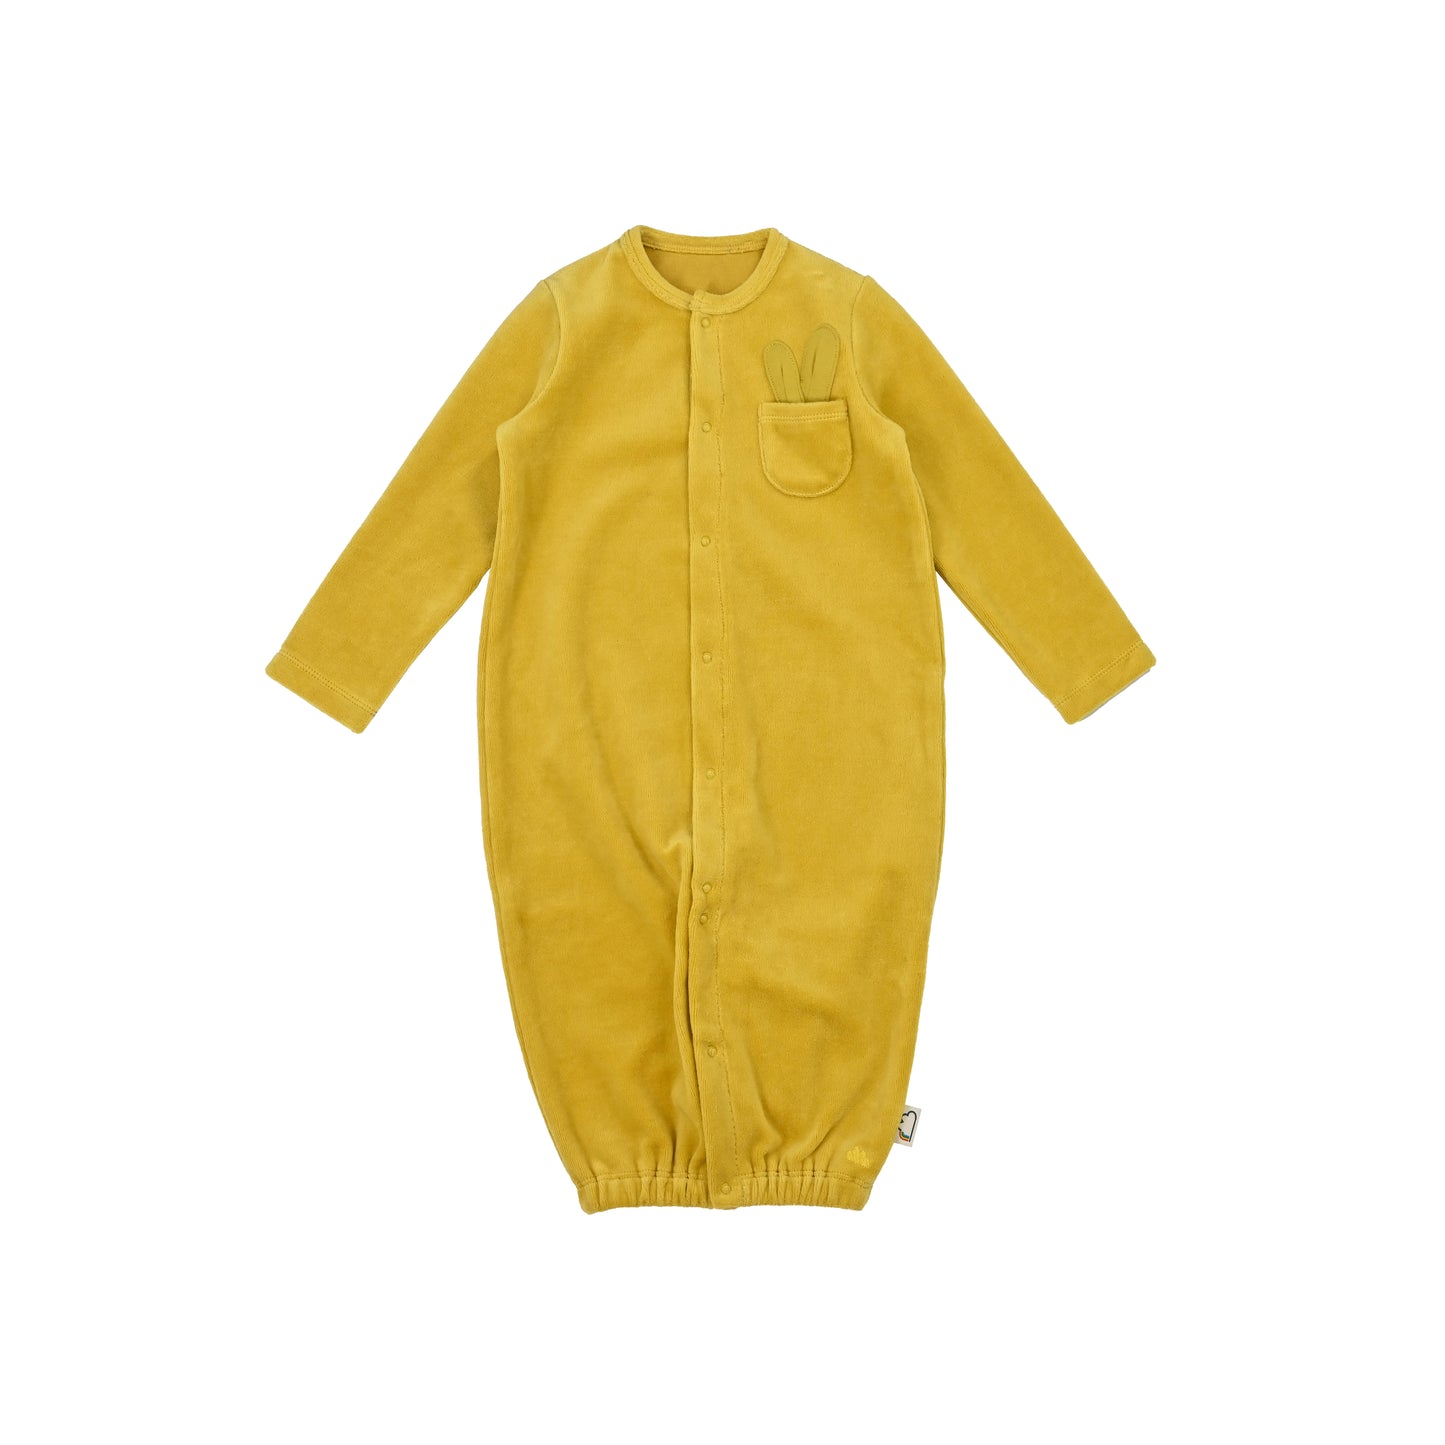 嬰兒服裝 - 絲絨兩用袍